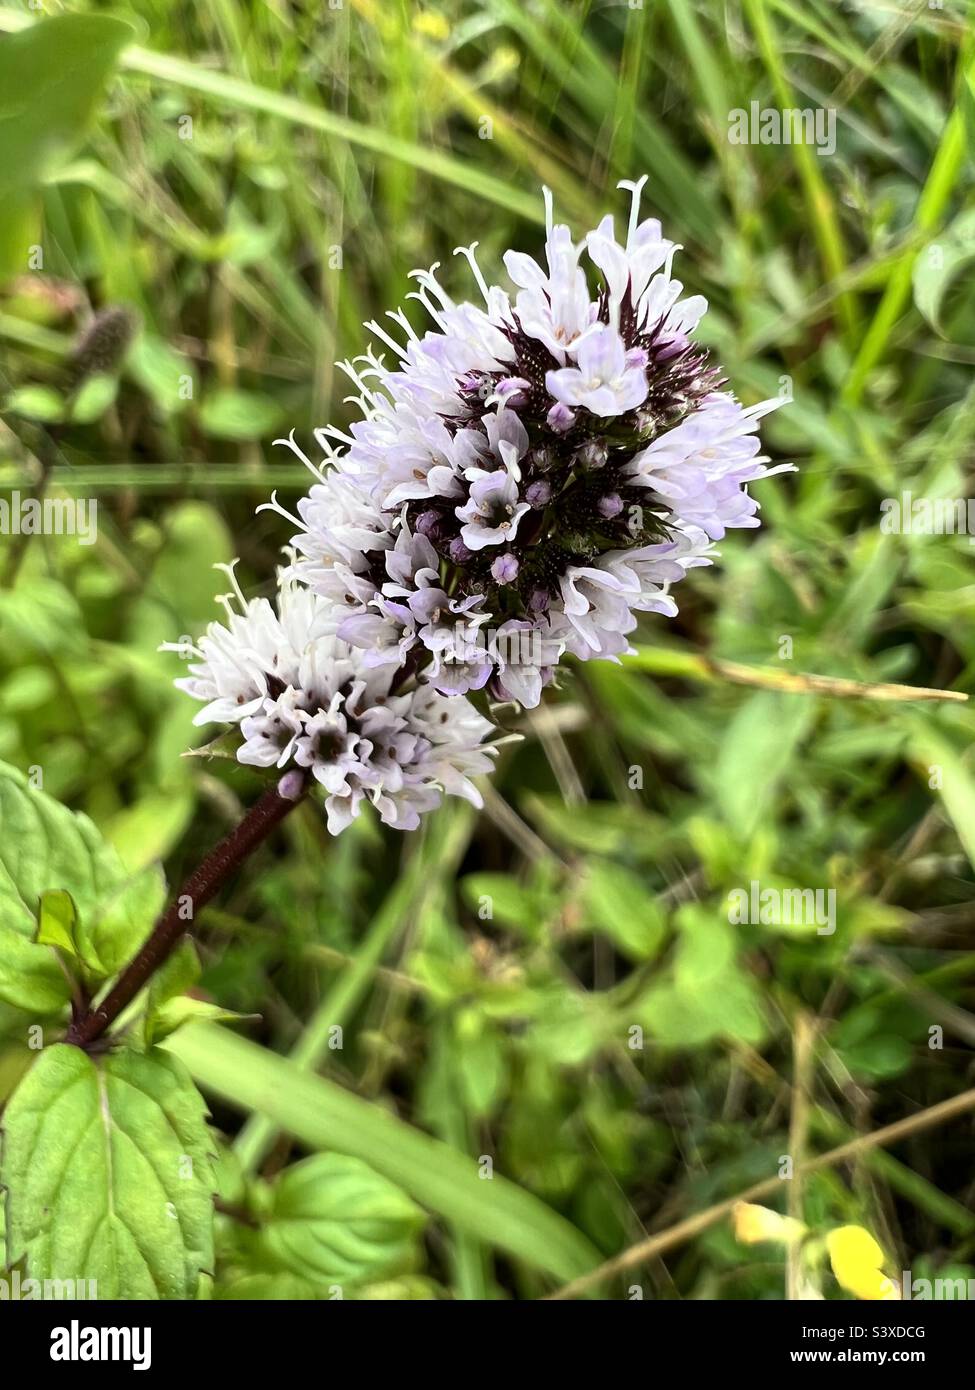 Purple spearmint flower Stock Photo